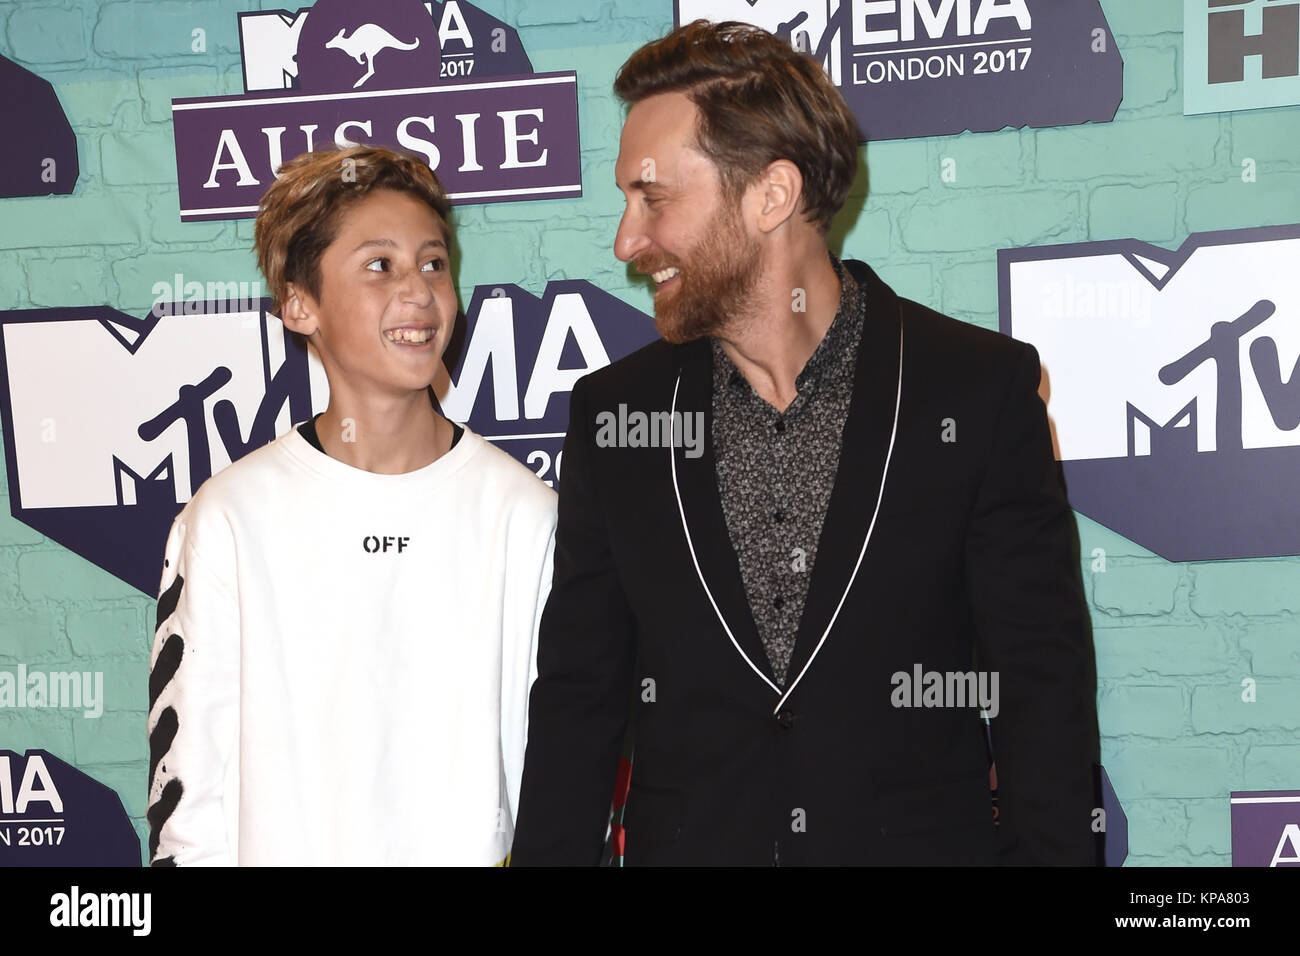 2017 MTV Europe Music Awards (EMAS) - Arrivées avec : David Guetta avec son fils où Elvis : London, Royaume-Uni Quand : 12 novembre 2017 Source : WENN.com **Uniquement disponible pour publication au Royaume-Uni, USA, Allemagne, Autriche, Suisse** Banque D'Images